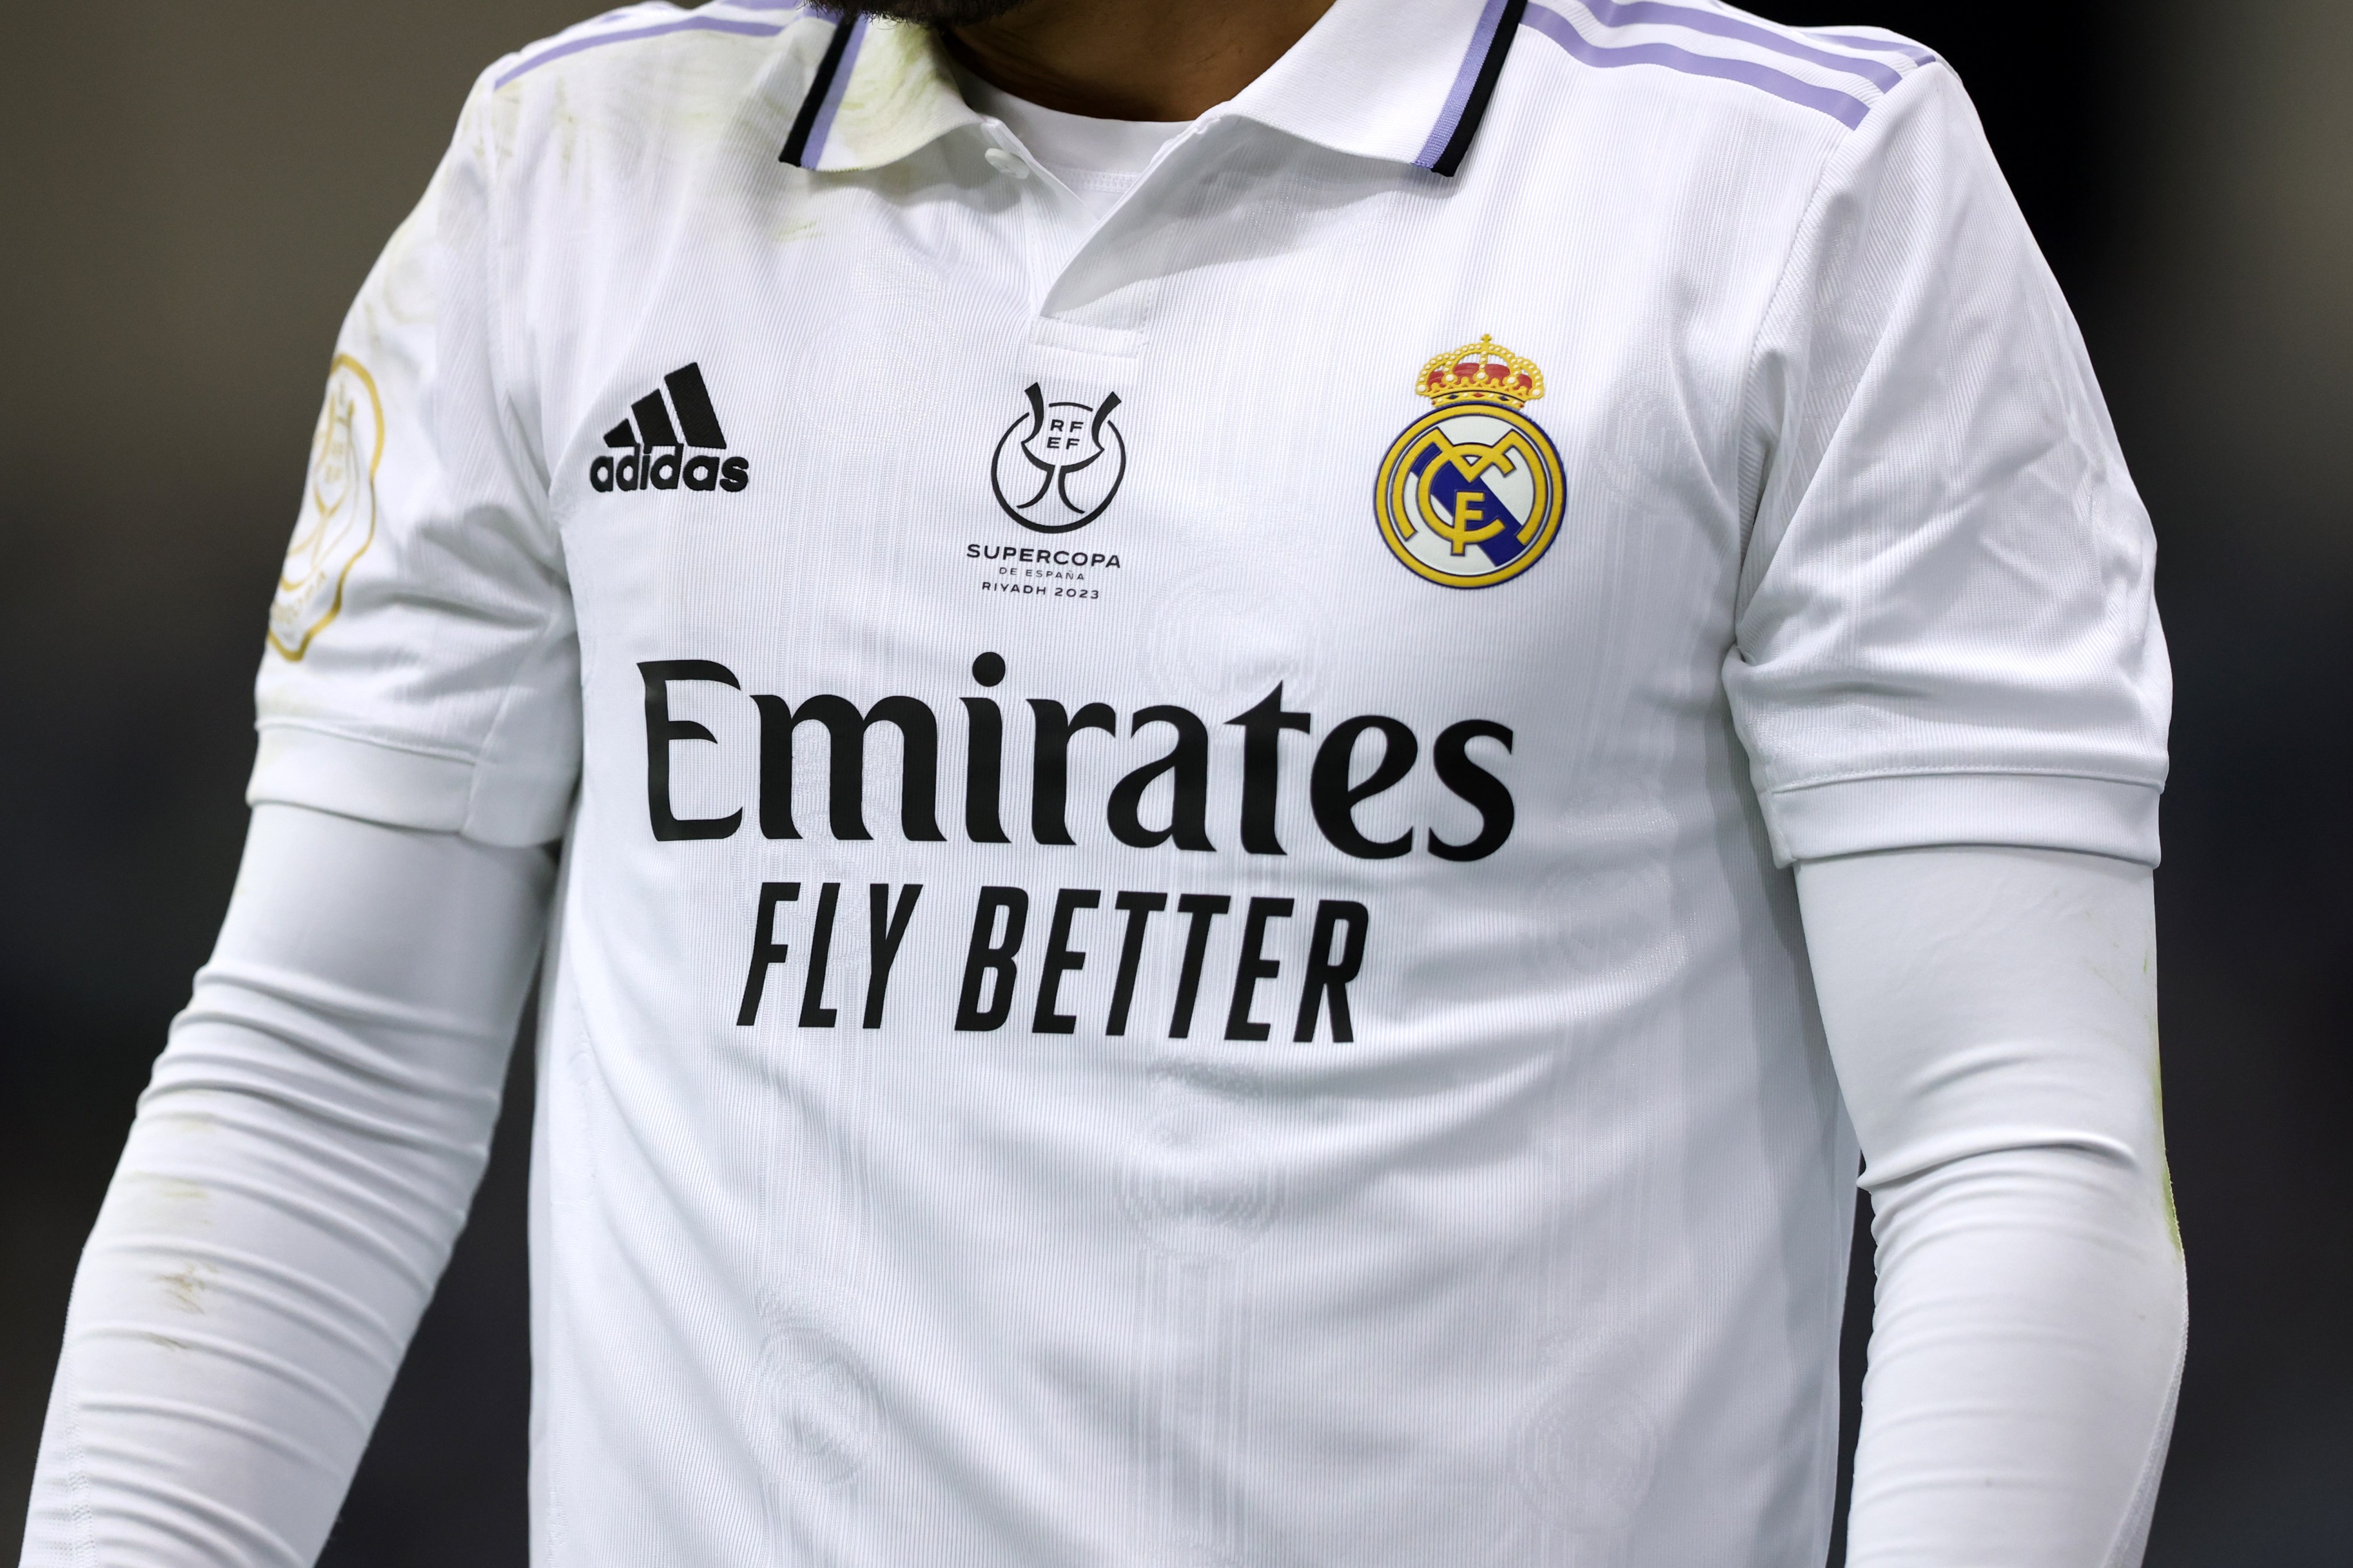 Camiseta Personalizada Equipación Futbol del Real Madrid - Nombre + Número